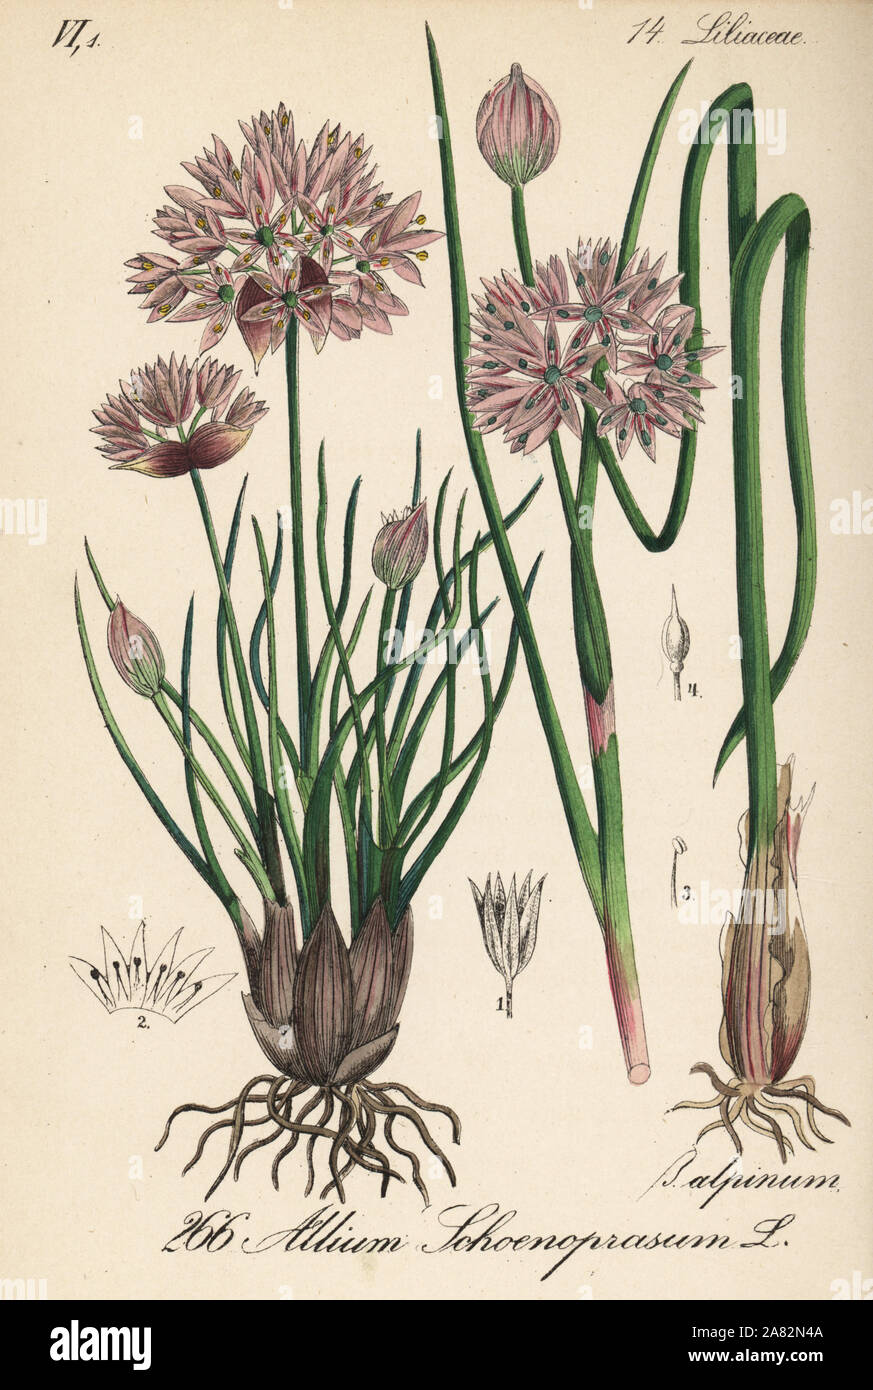 Schnittlauch, Allium schoenoprasum. Papierkörbe Lithographie von Diederich von Schlechtendal der Deutschen Flora (Flora von Deutschland), Jena, 1871. Stockfoto